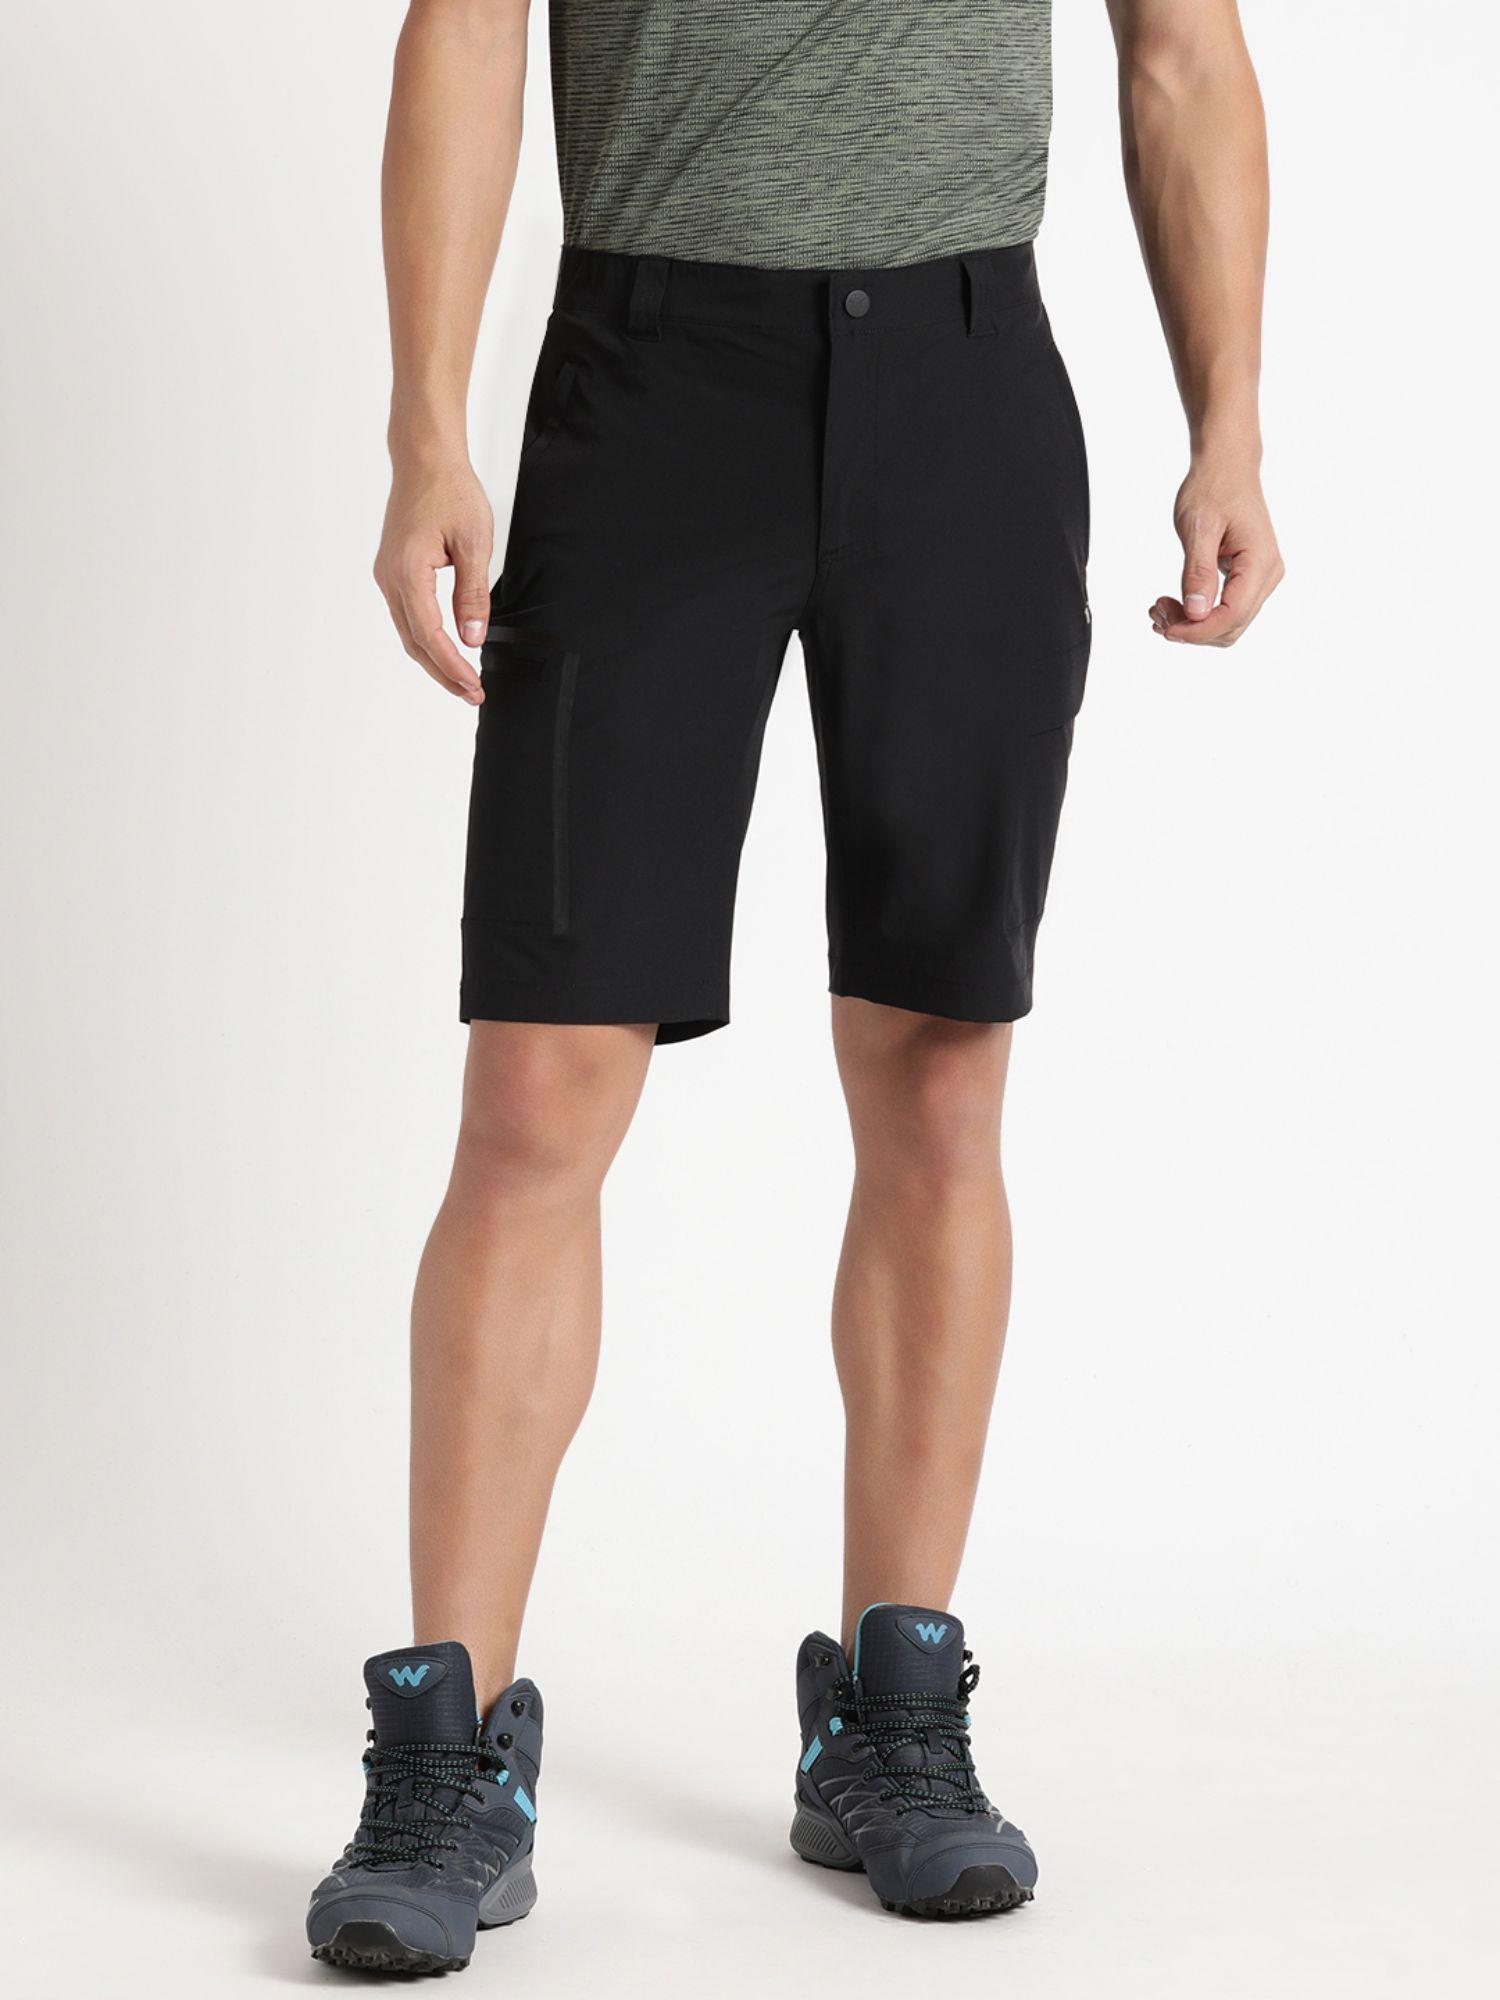 men-hiking-regular-fit-nylon-fabric-anti-odor-shorts-black